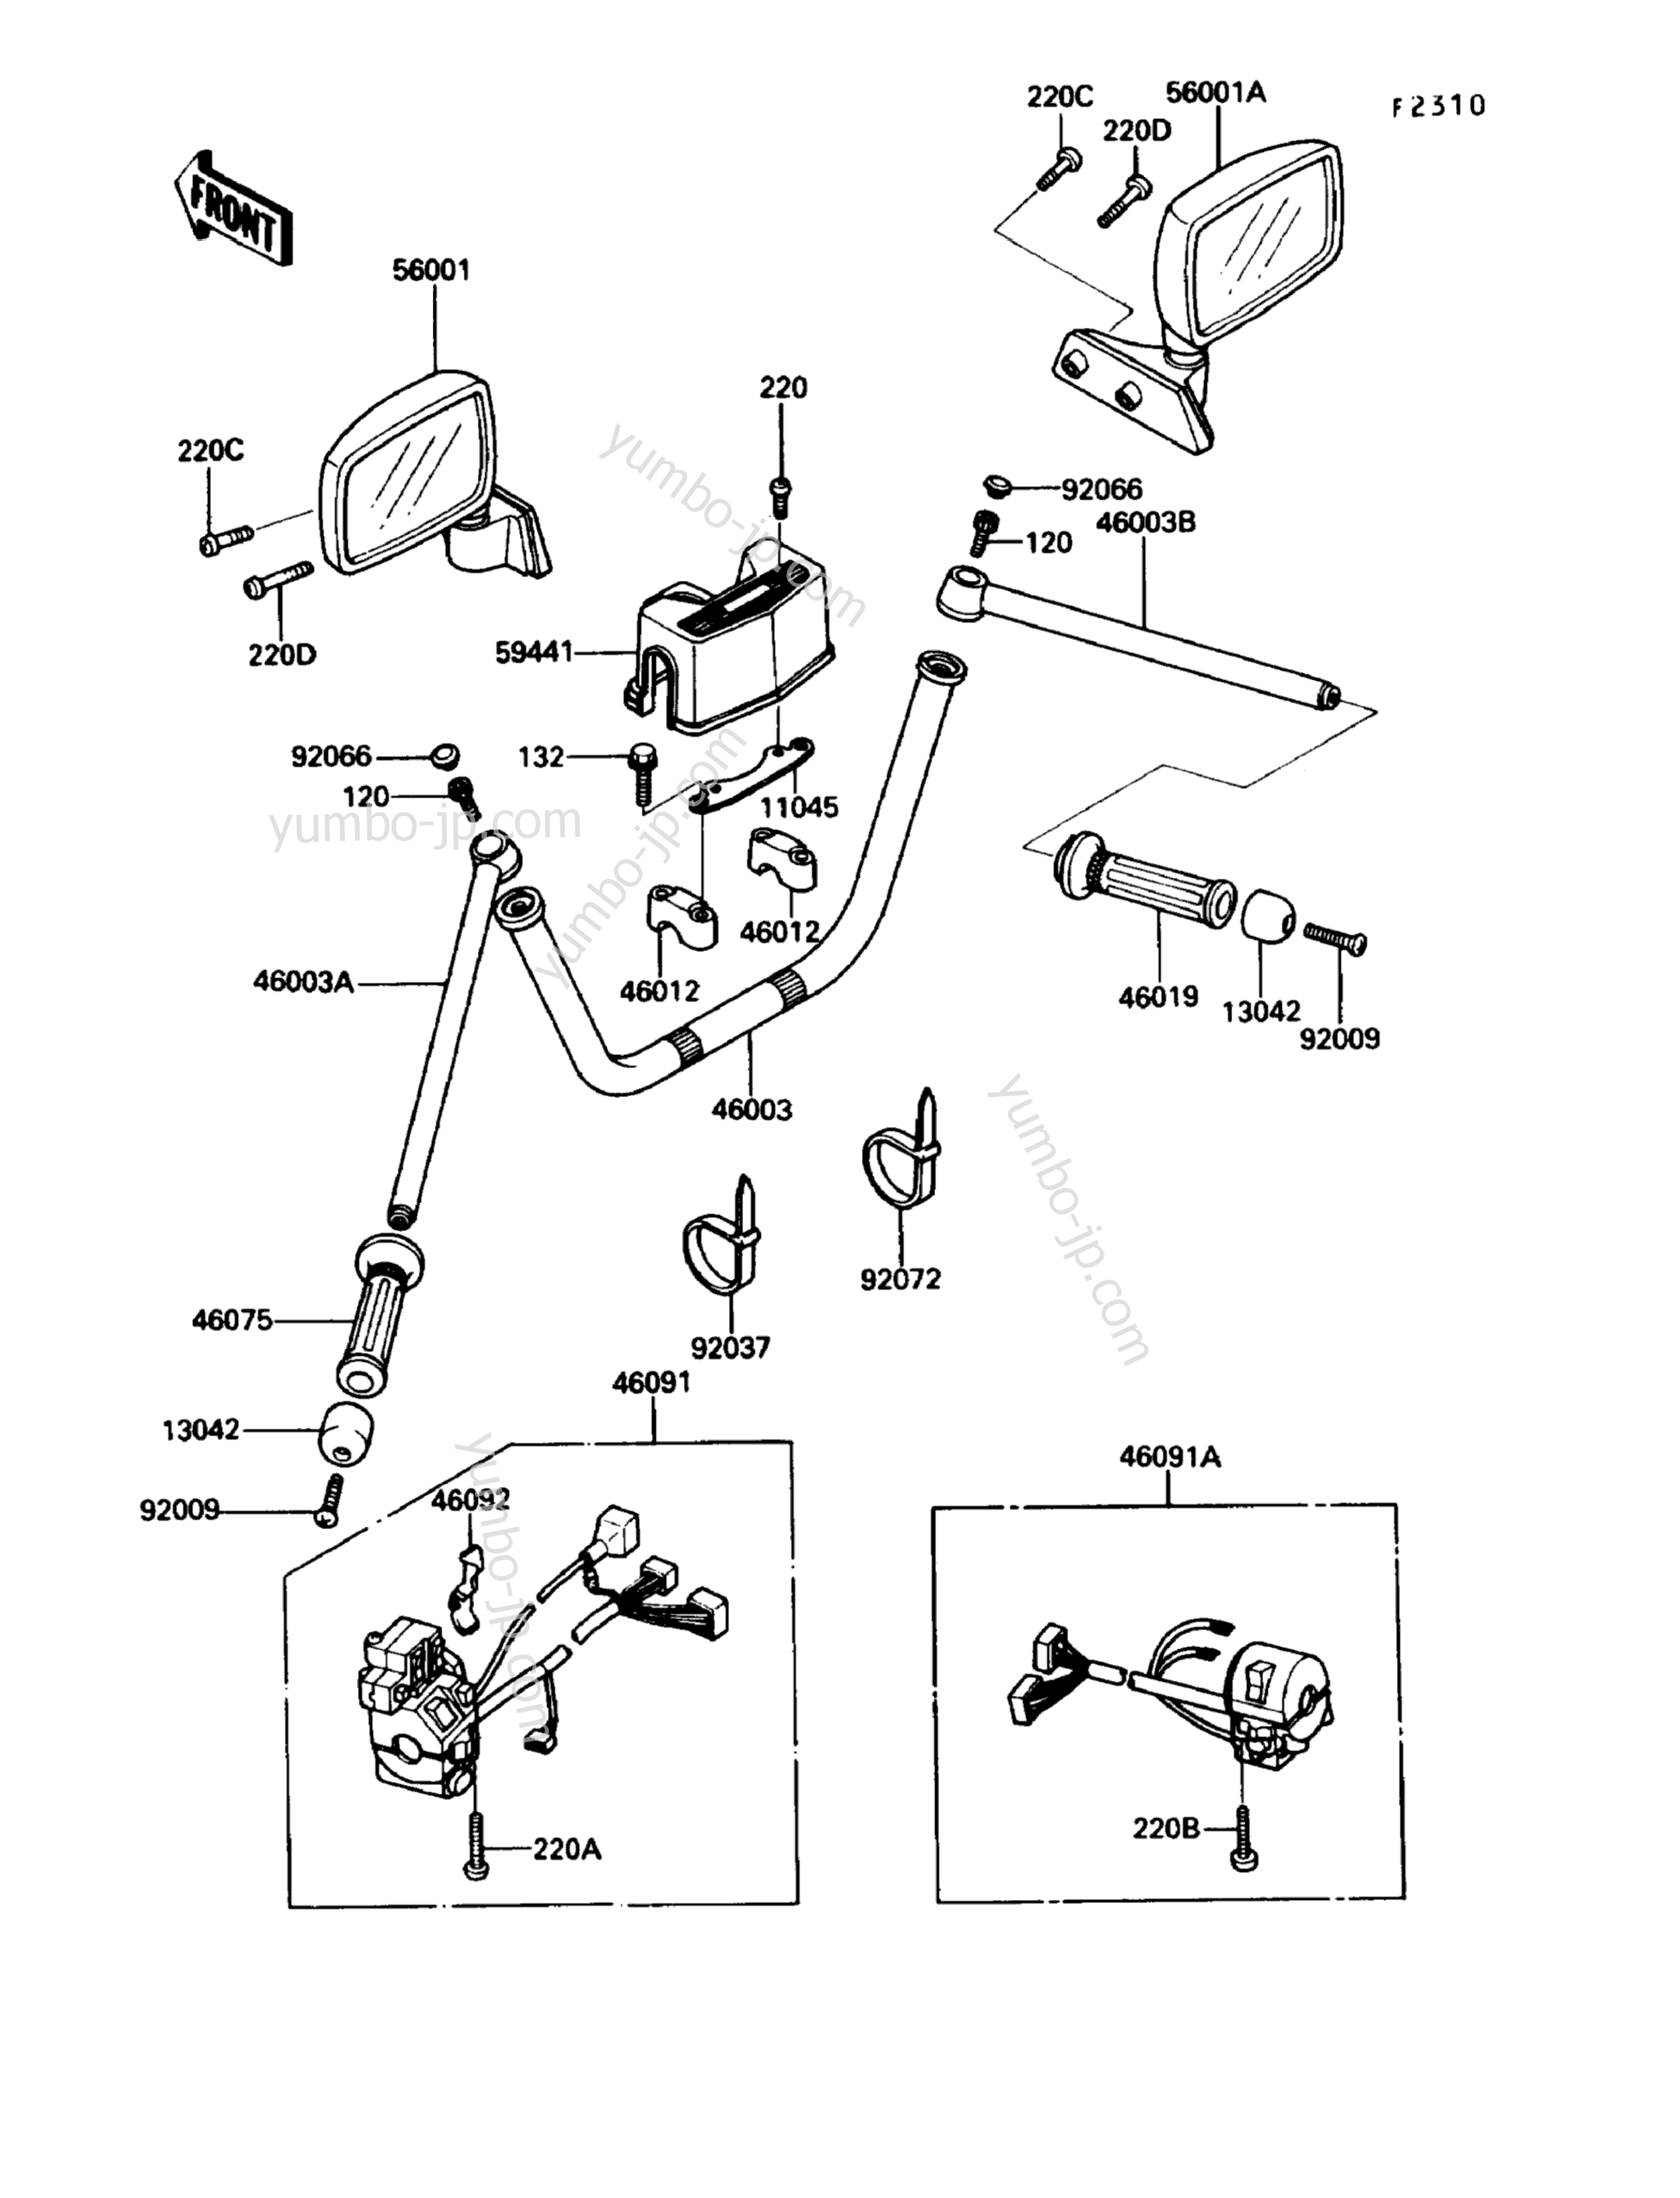 Румпель (рукоятка управления) для мотоциклов KAWASAKI VOYAGER XII (ZG1200-B3) 1989 г.